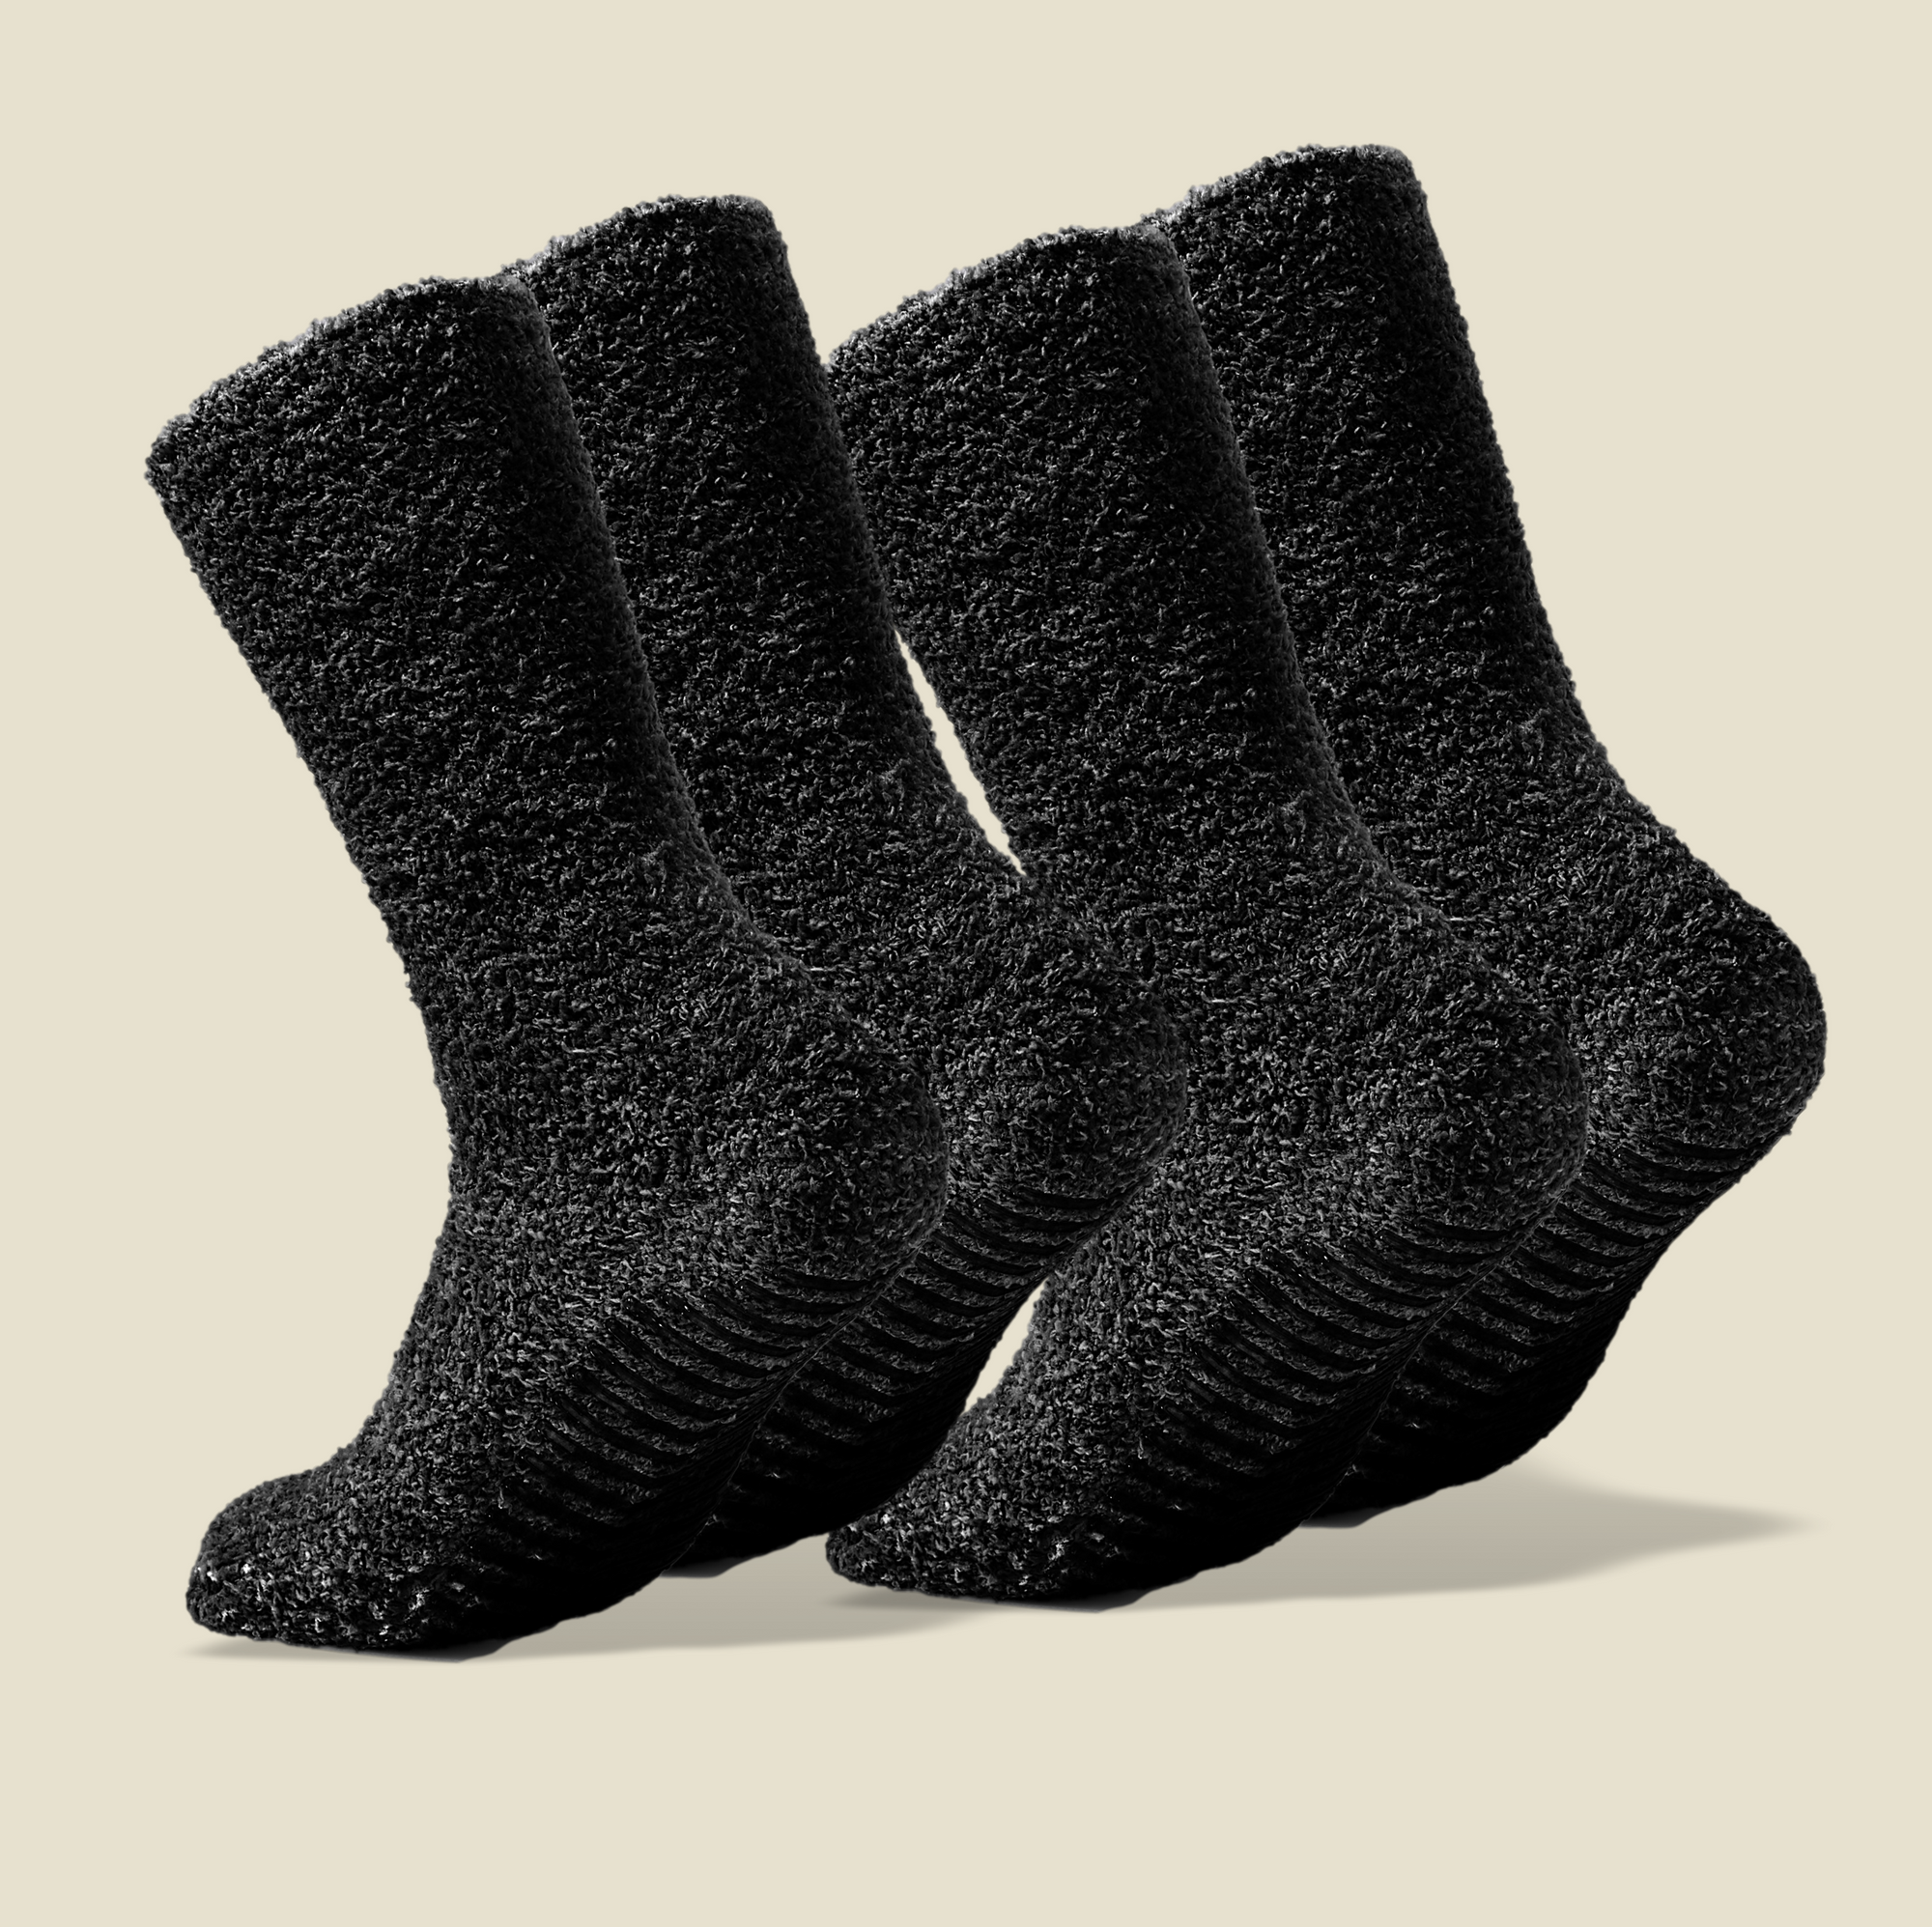 Dark Grey Fuzzy Socks with Grips for Women x2 Pairs - Gripjoy Socks